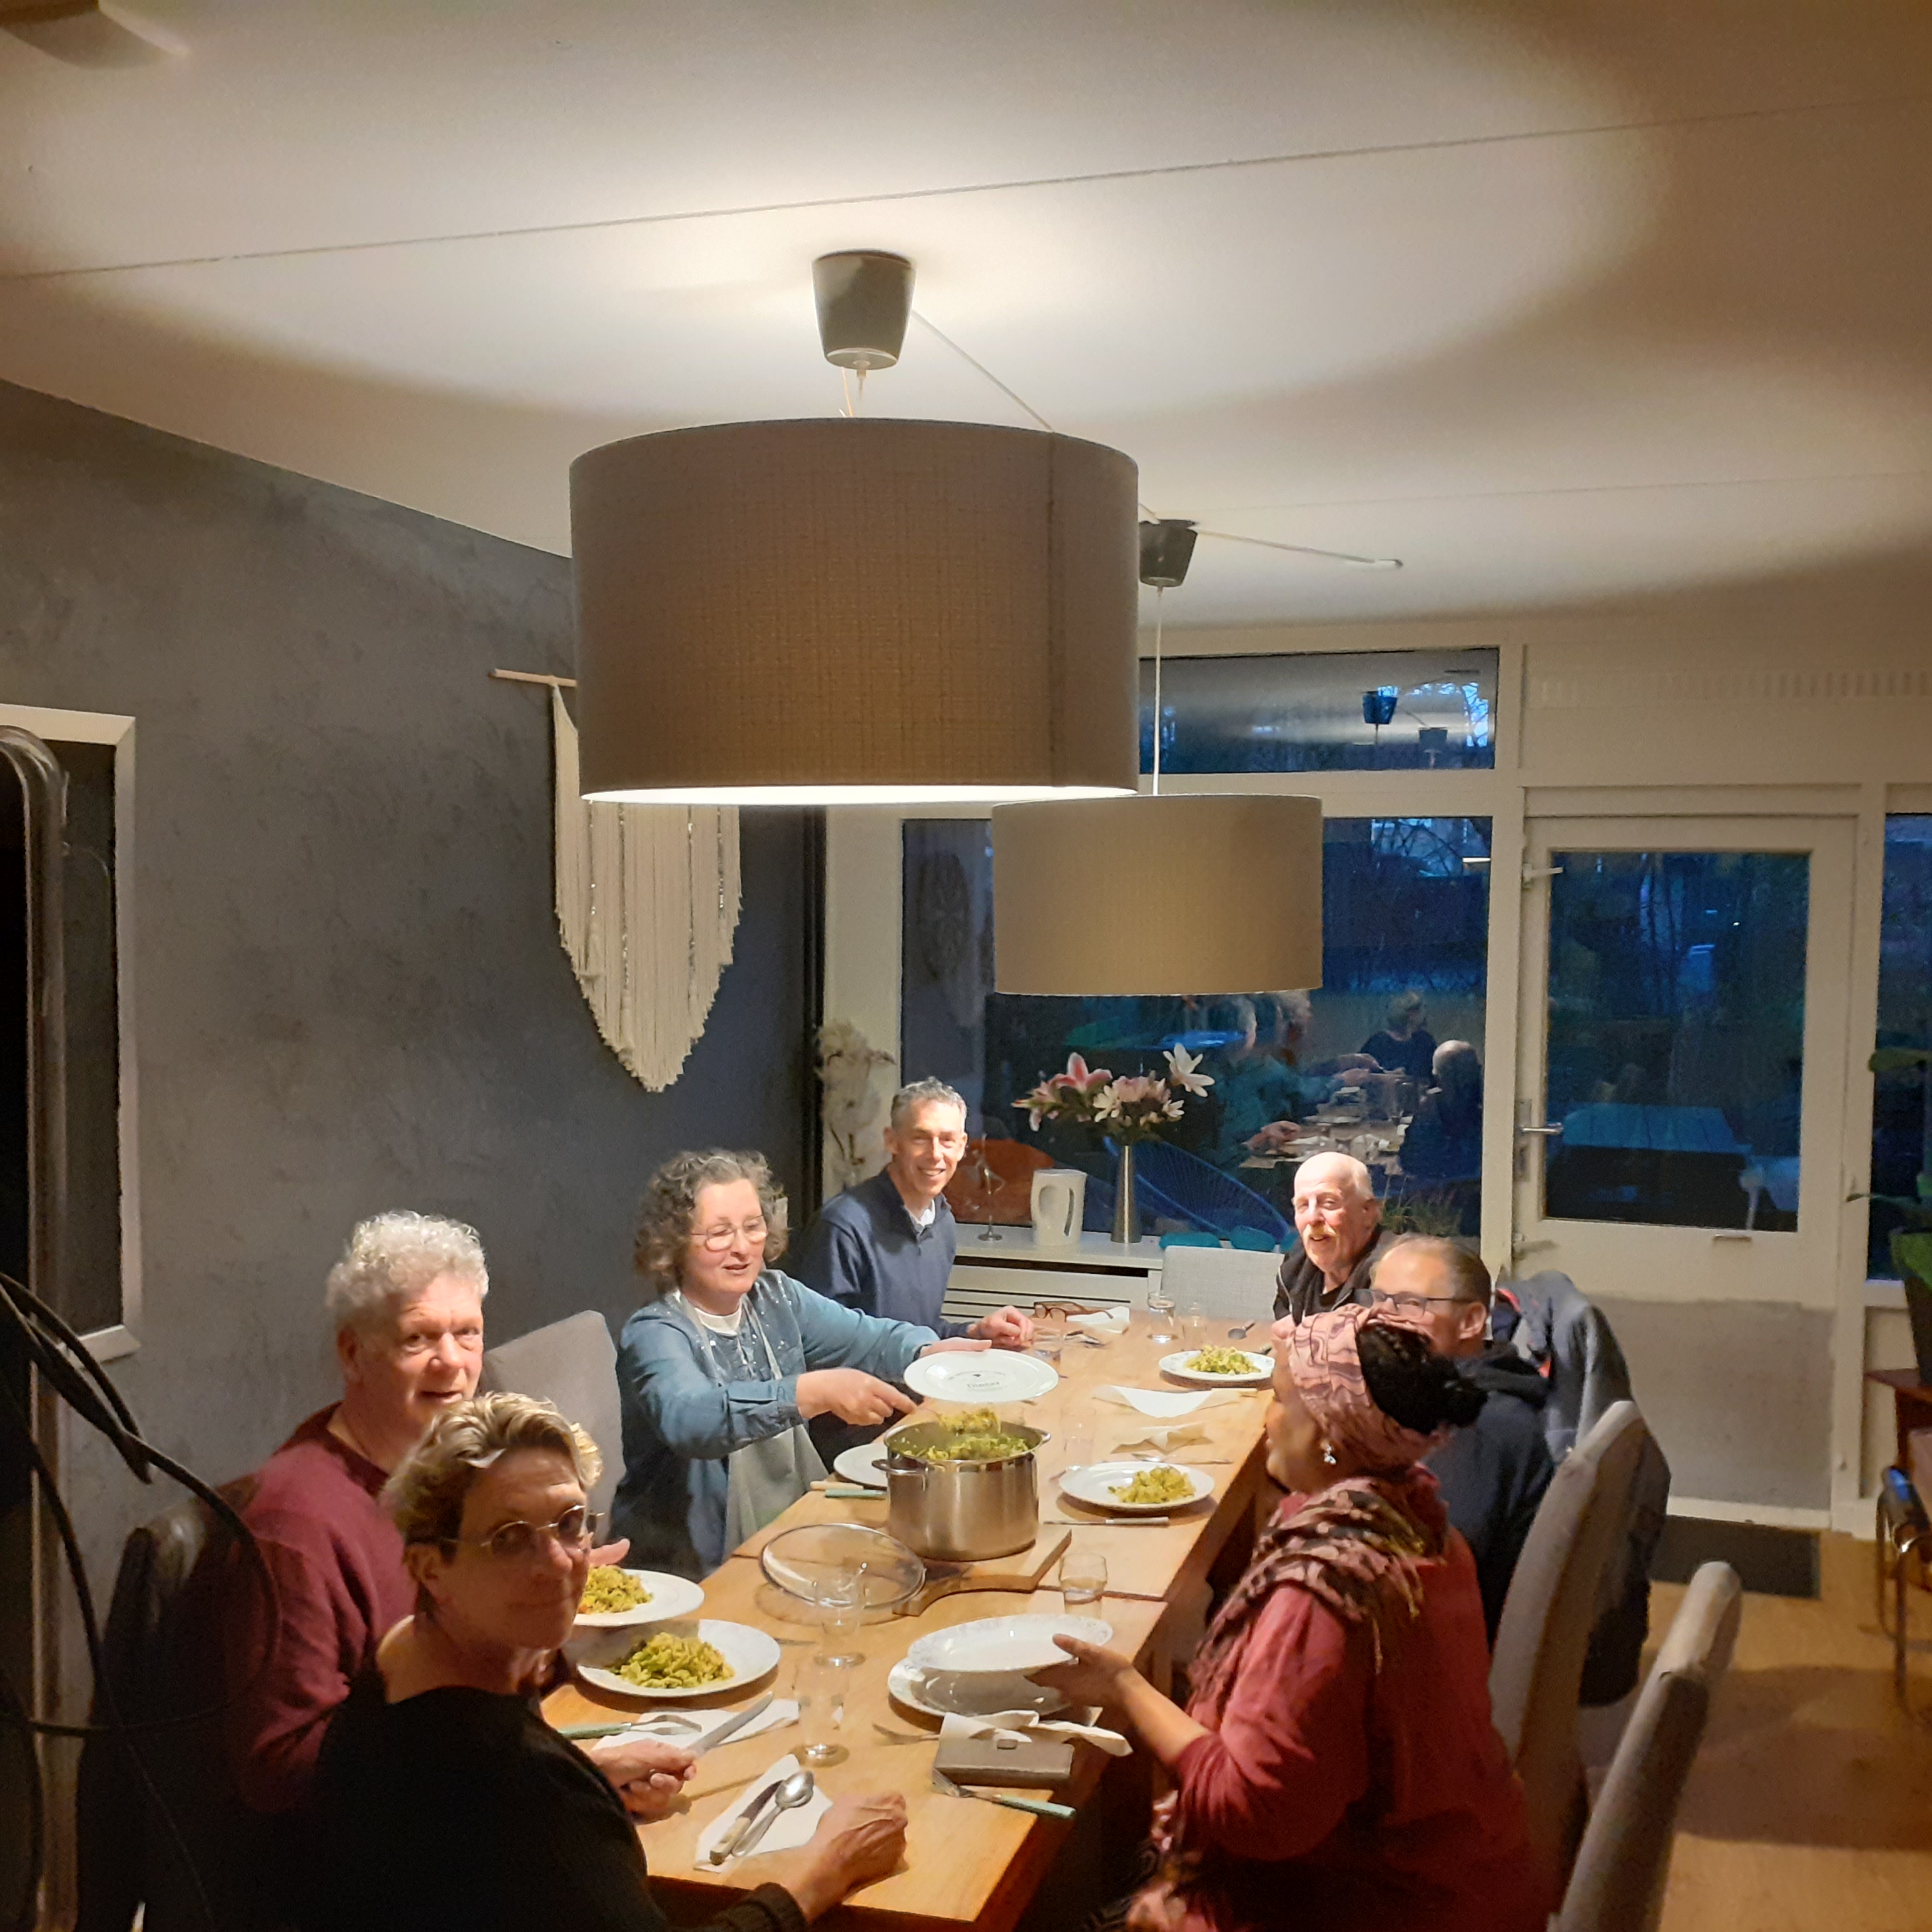 Er wordt regelmatig onder leiding van Frank de Ruijter samen gekookt en gegeten bij het kookcafé in buurthuis Heul Gezellig.